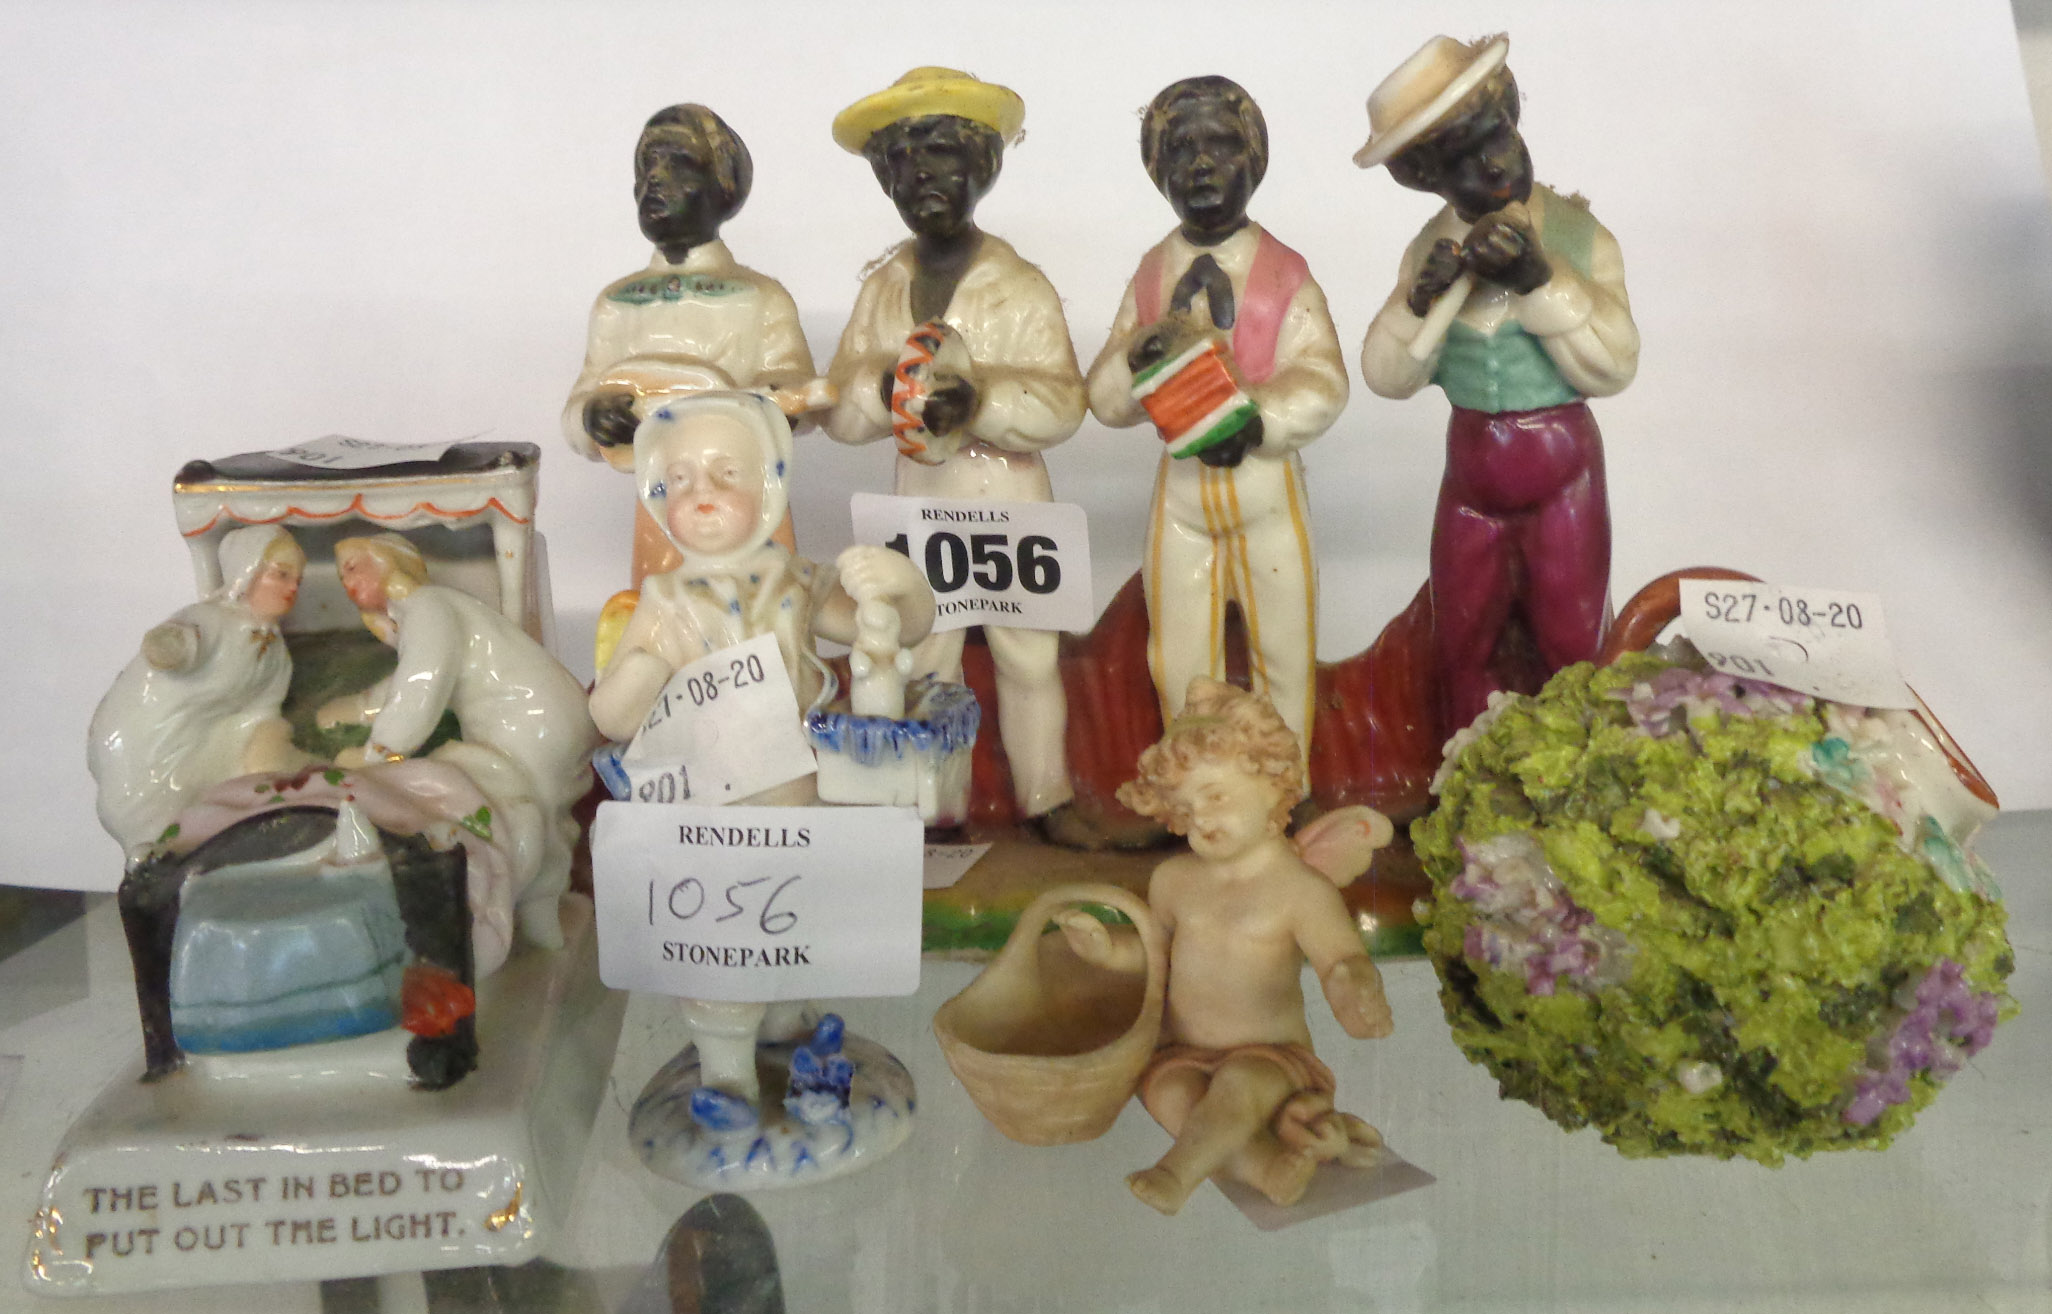 A small quantity of 19th Century figurines including a black quartet, a fairing, etc. - various